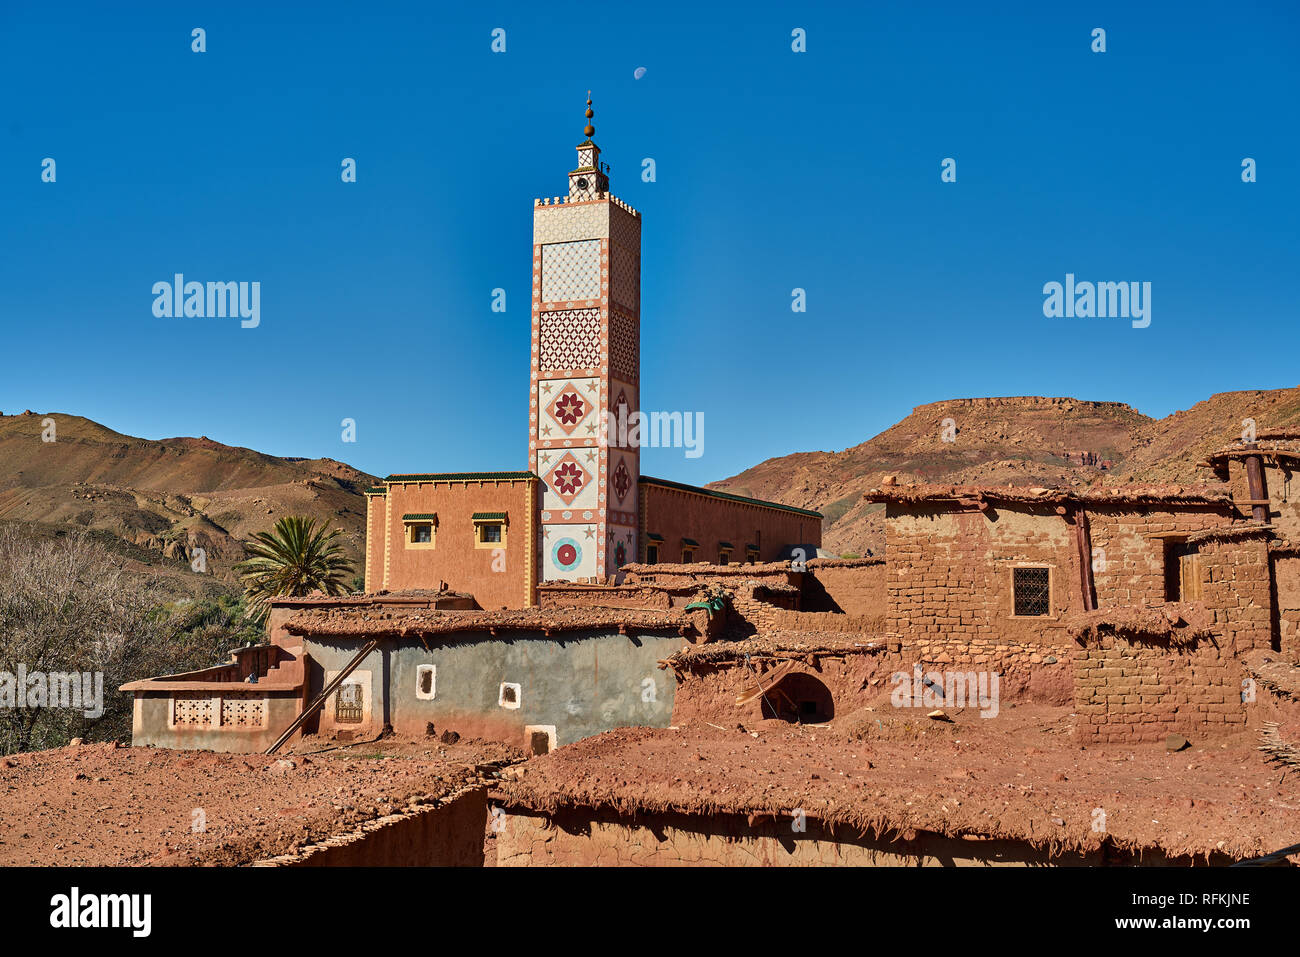 Maisons traditionnelles de village en briques de boue et minaret/mosquée à la décoration colorée. Pris près de Tiseldei, province d'Ouarzazate, Maroc Banque D'Images